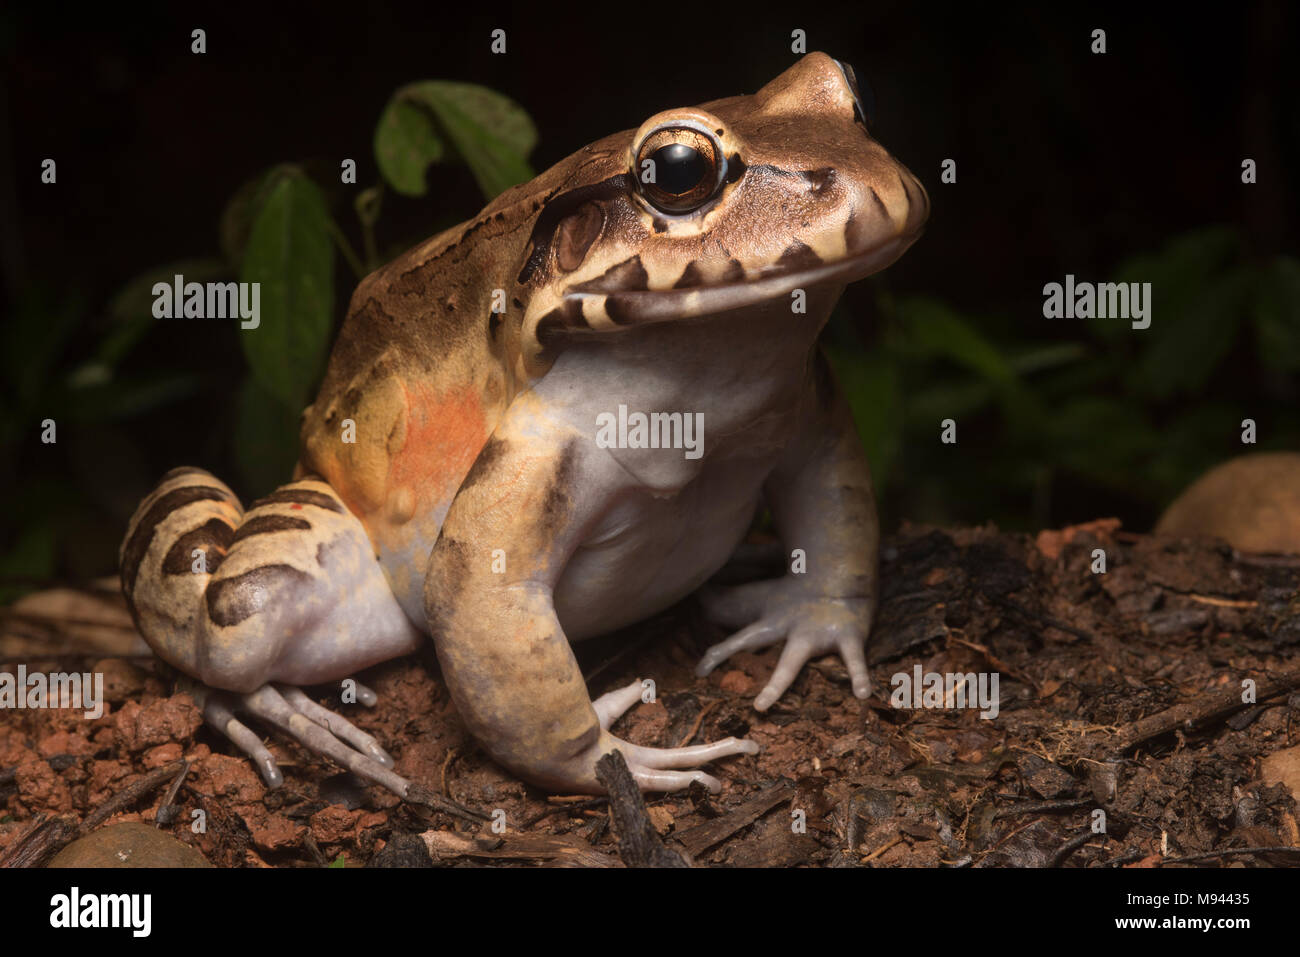 Il fumoso jungle frog (Leptodactylus pentadactylus) è la più grande specie rana nella sua gamma, si siede sul pavimento di foresta e si nutre di piccole prede. Foto Stock